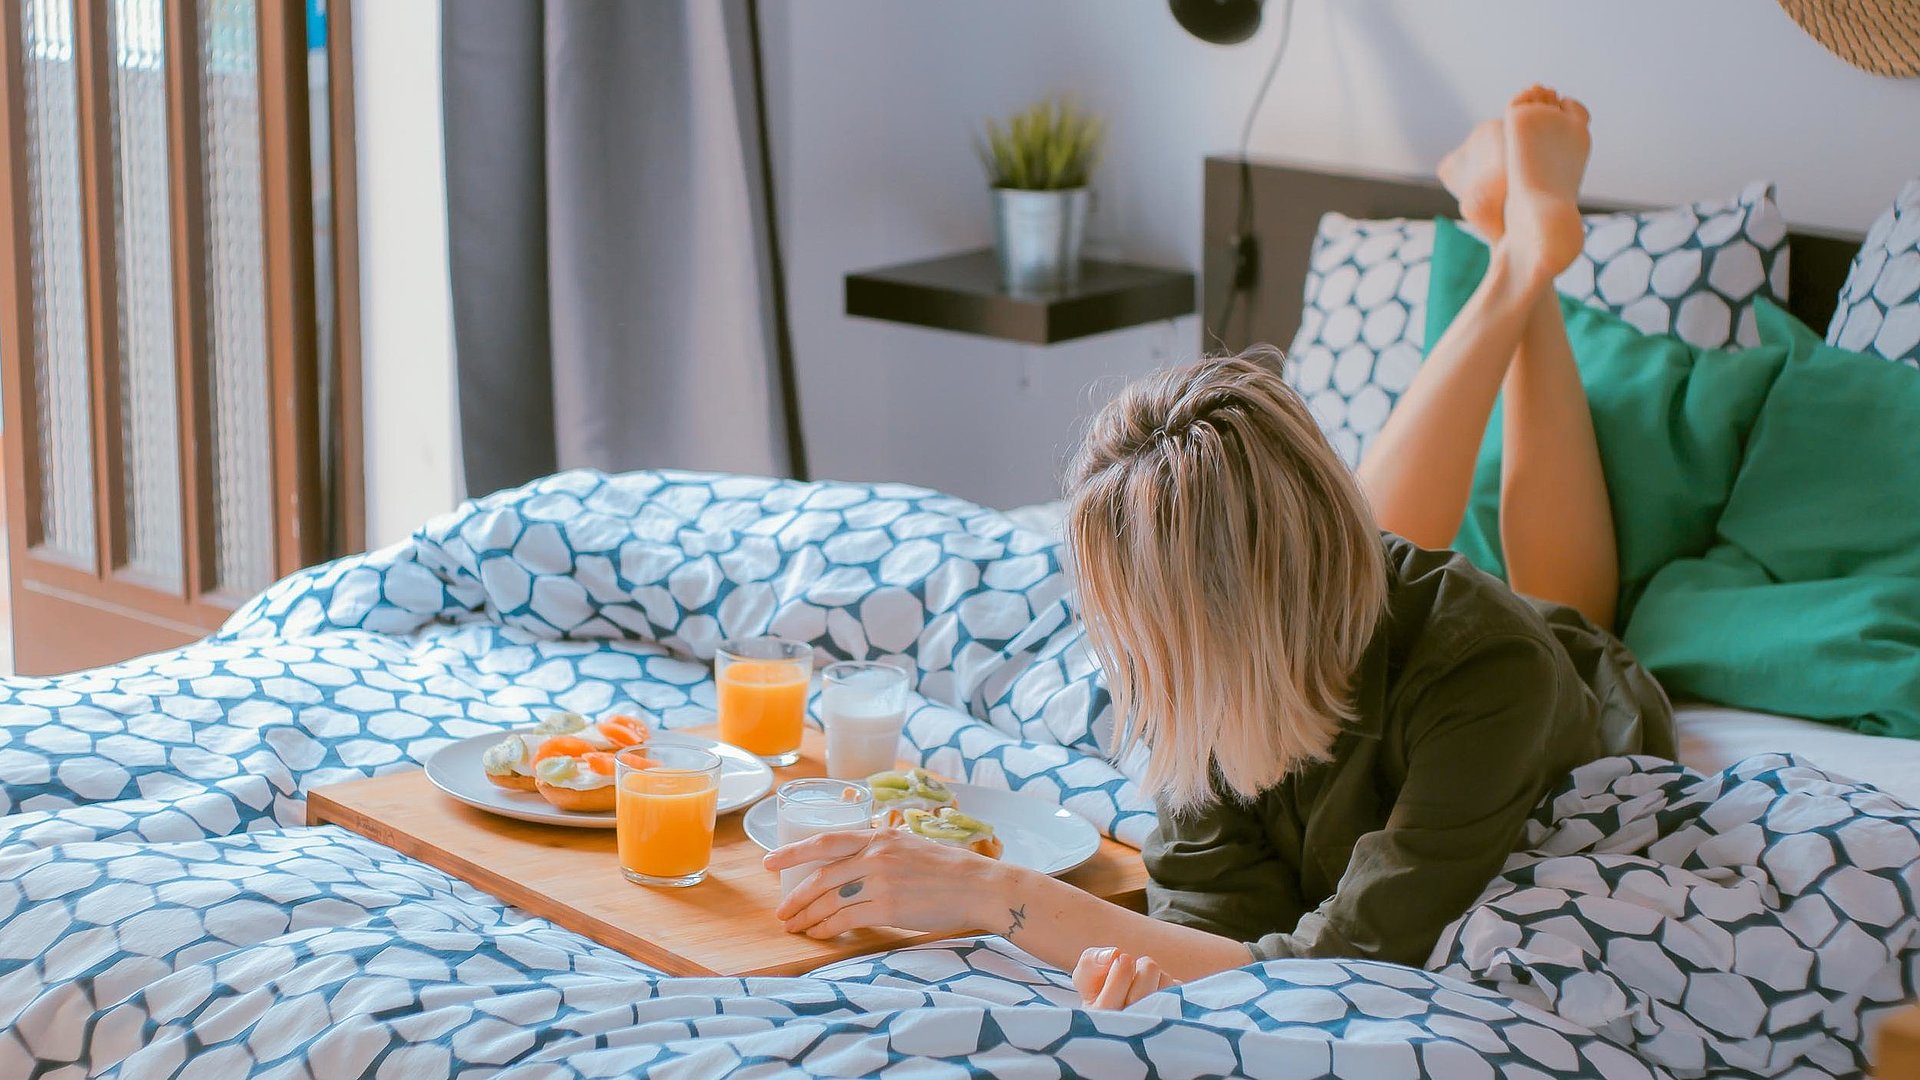 Pauschalangebote für Wochentagsunterkünfte in Oberfranken - junge blonde Frau liegt im Bett neben einer Frühstücksplatte, gefüllt mit O-Saft, Milch und belegten Brötchen 